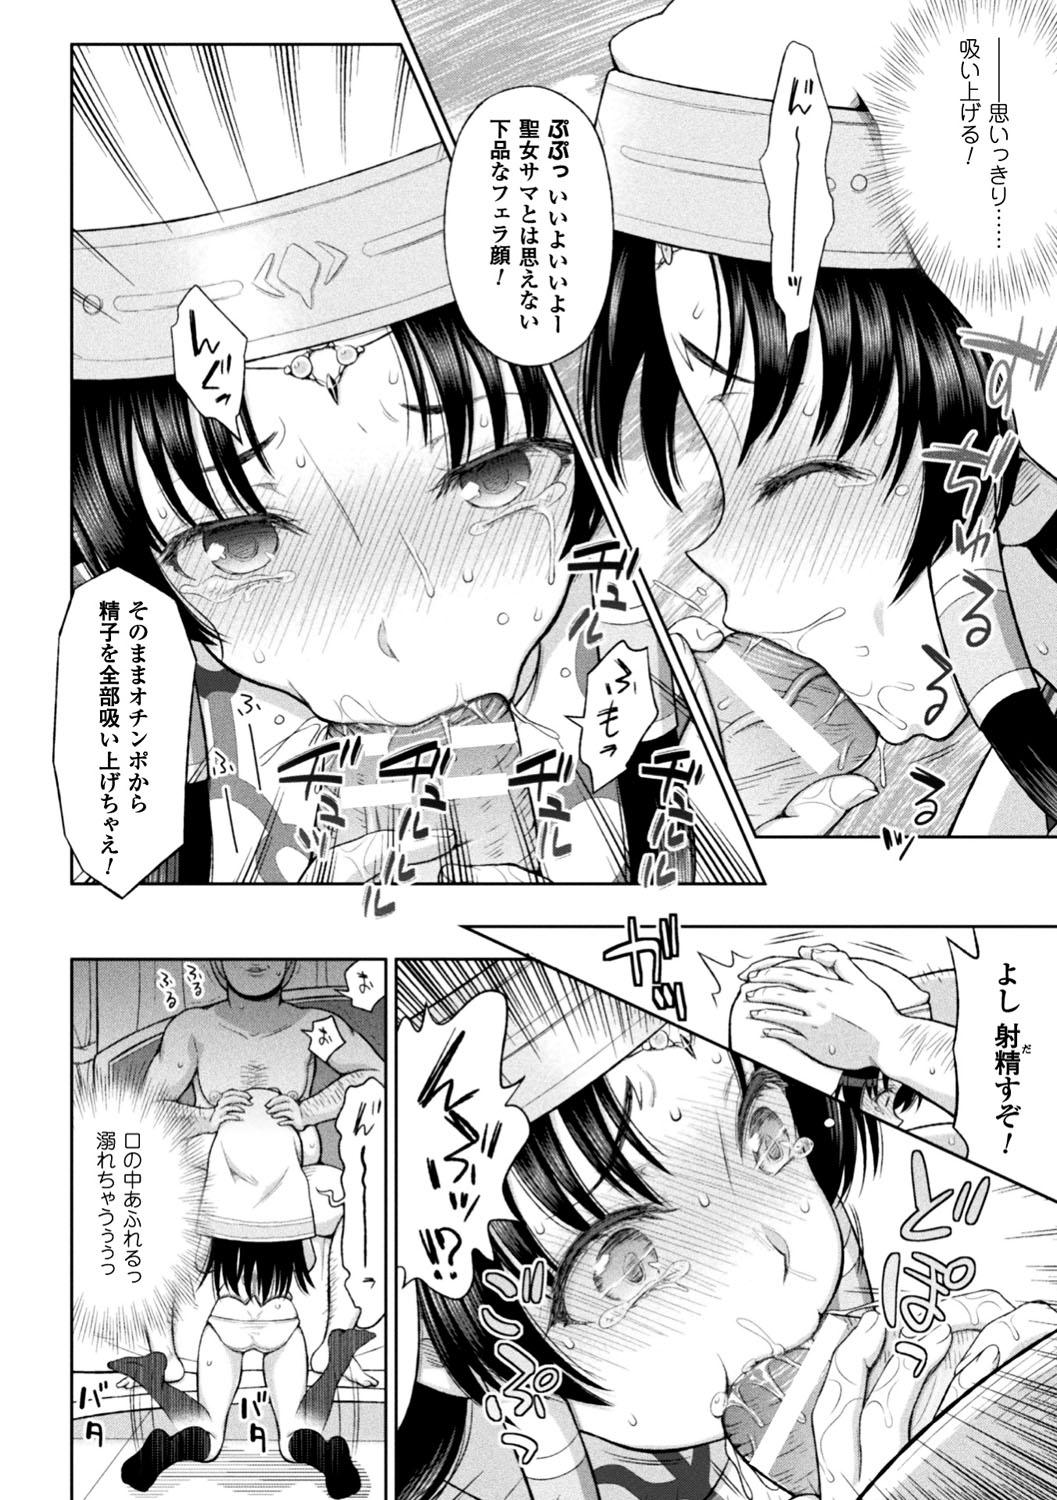 Seigi no Heroine Kangoku File Vol. 12 13